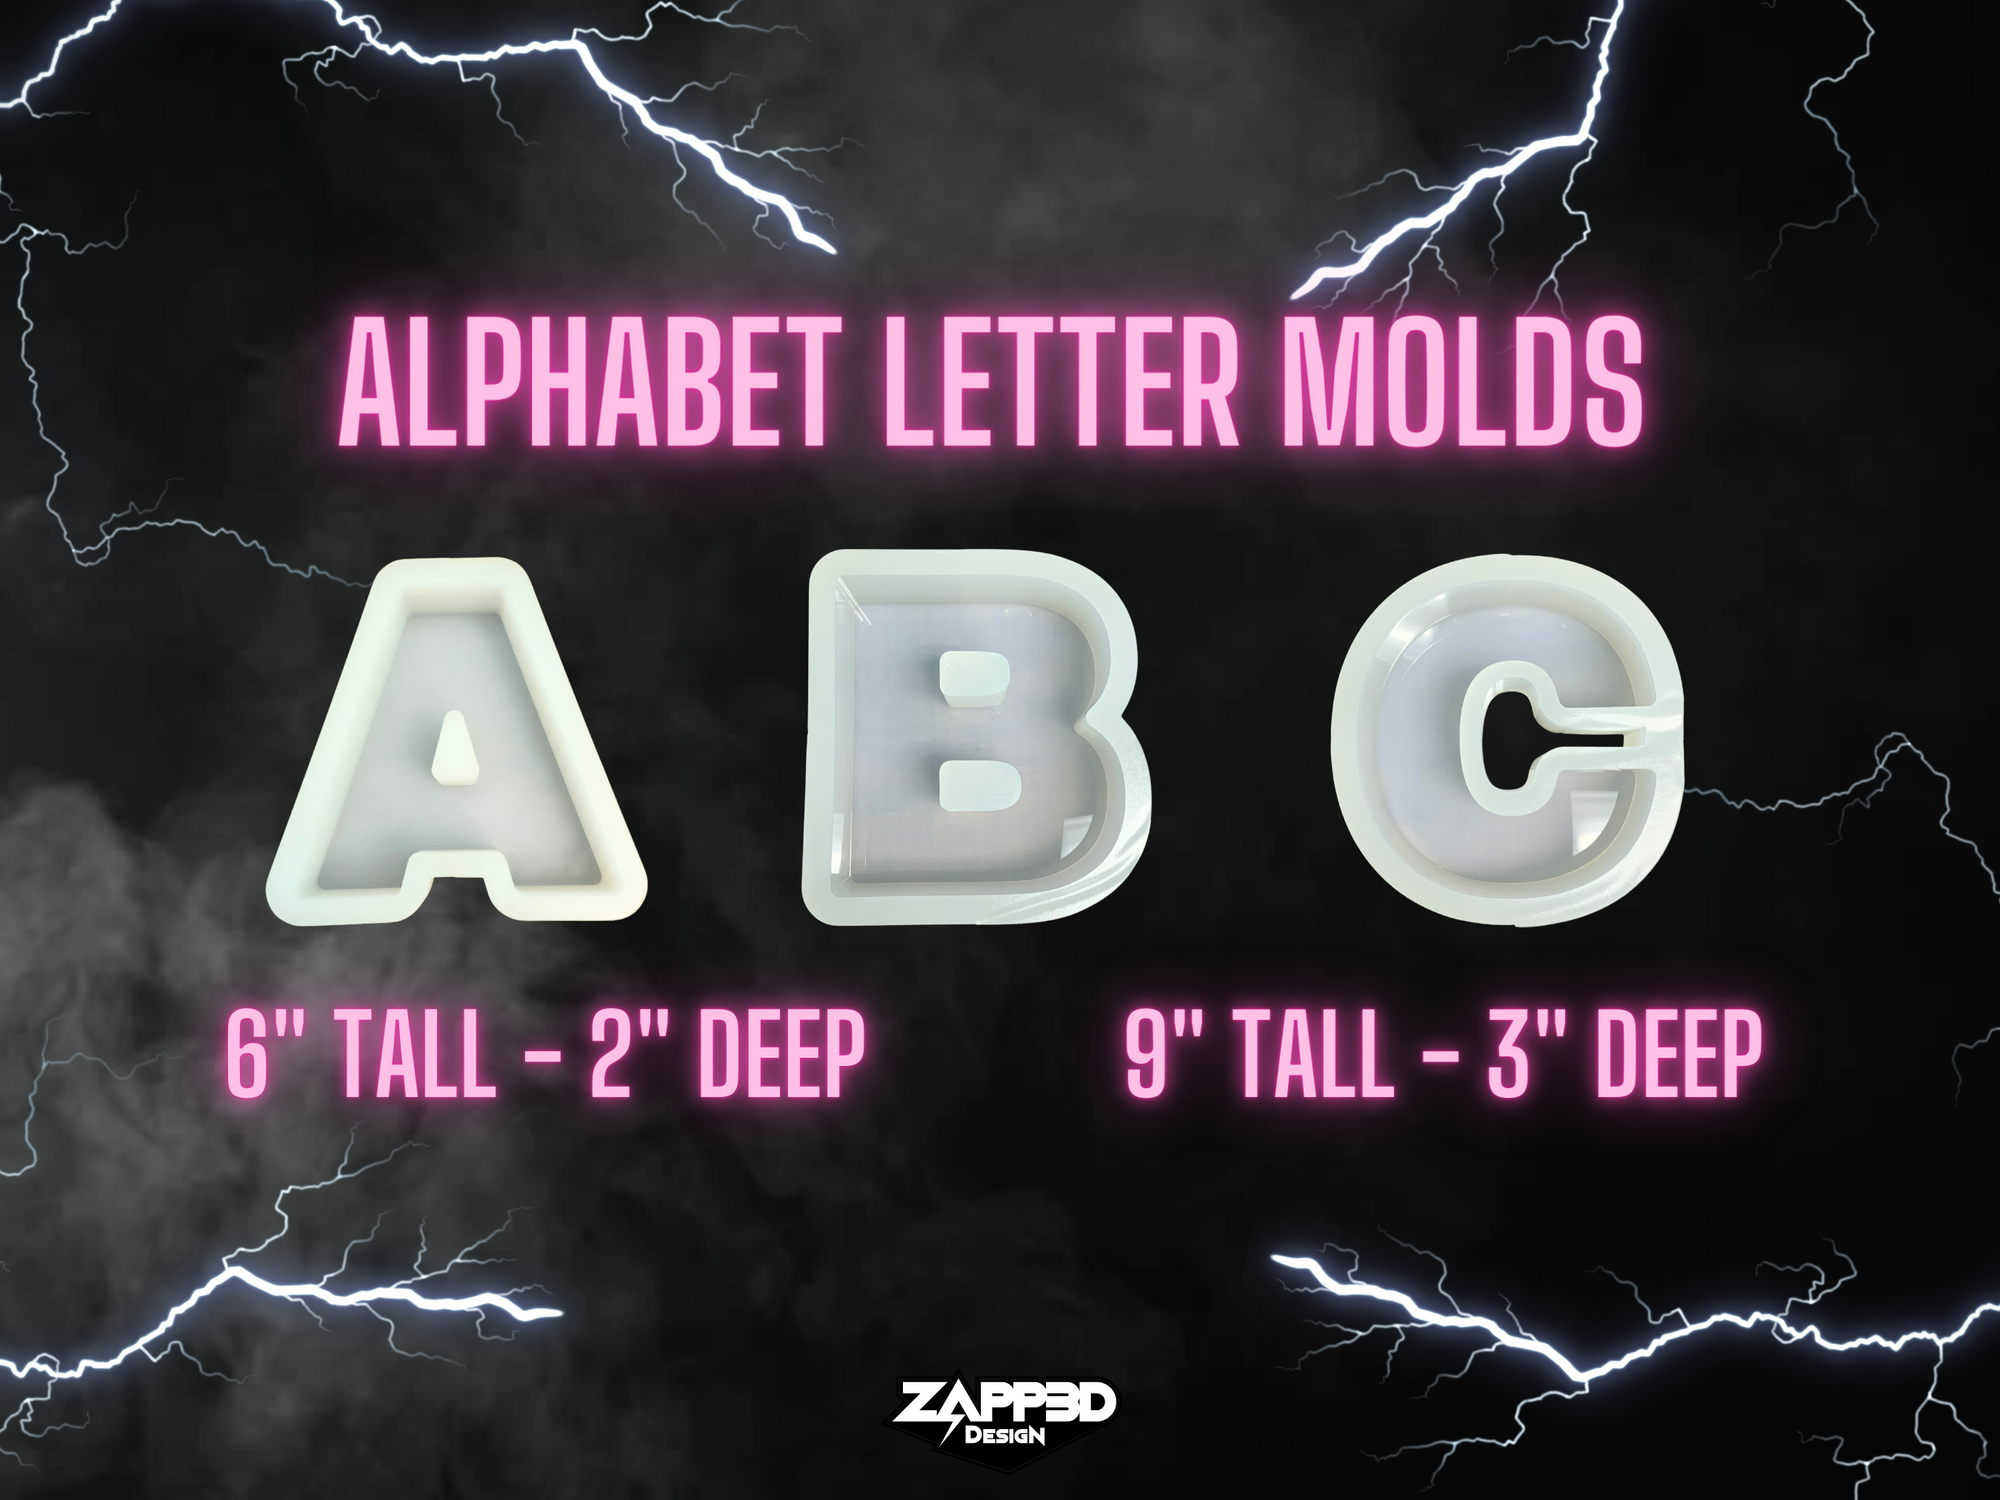 3" Deep Alphabet Letter Molds